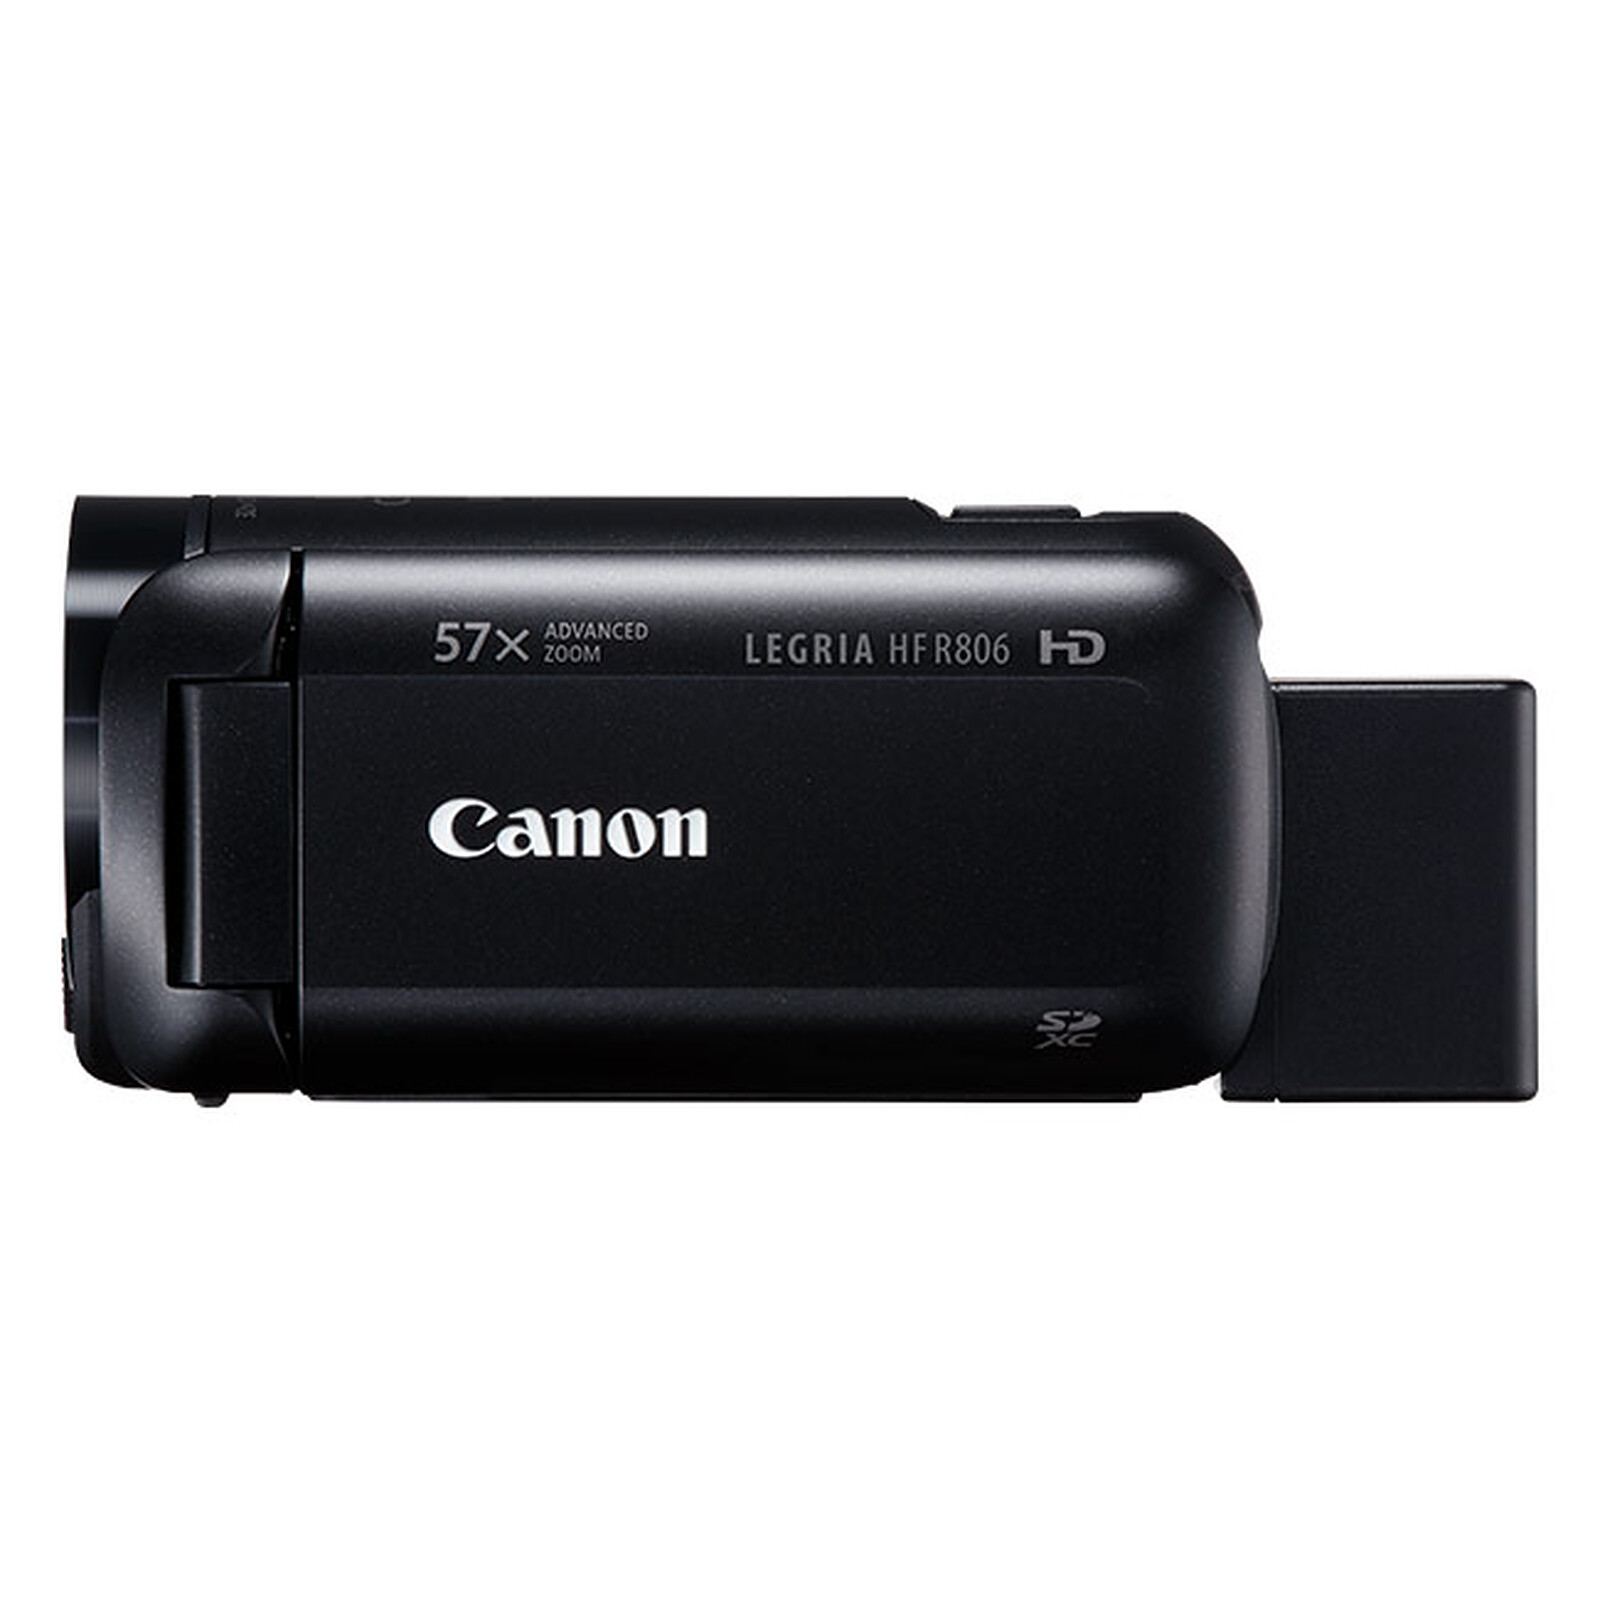 6x Canon Legria HF R806 pantalla de película de plástico Protector De Pantalla Transparente Protección 